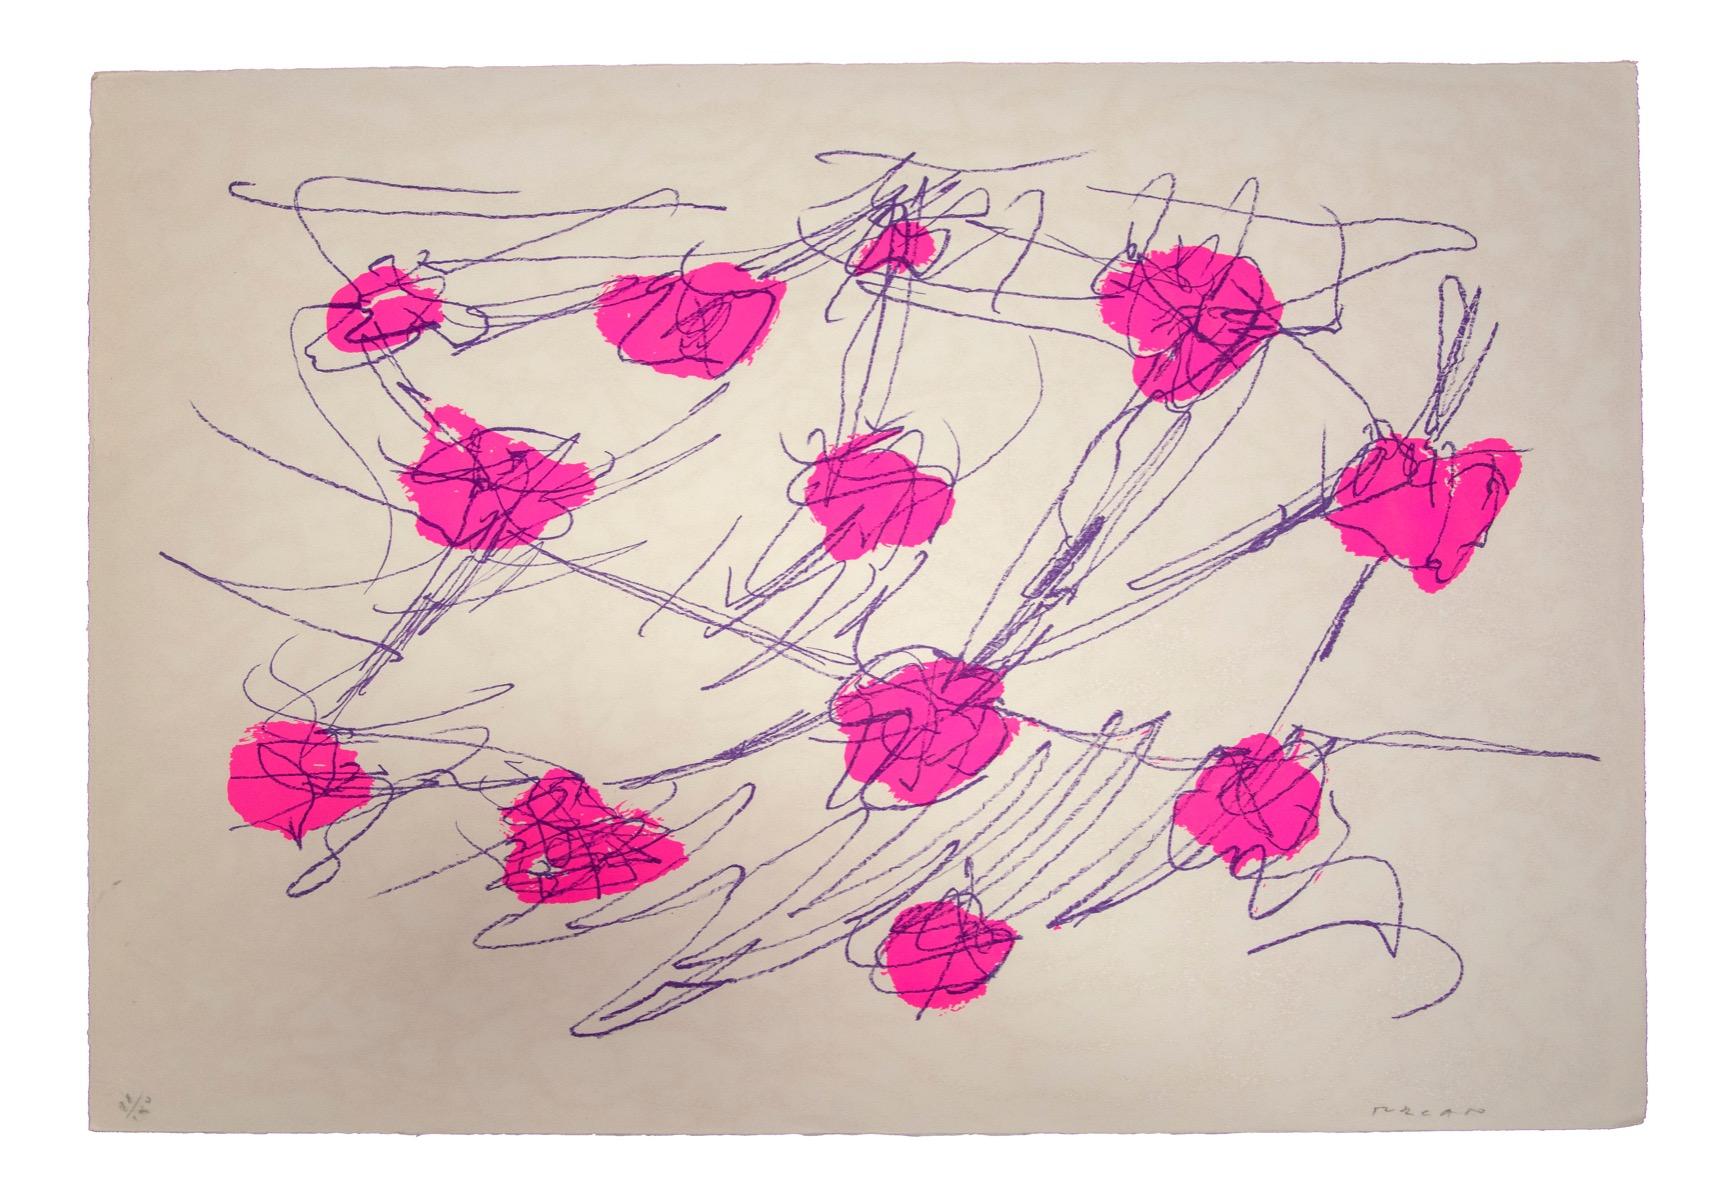 Abstract Composition est une sérigraphie colorée réalisée par l'artiste contemporain Giulio Turcato.

Signé à la main au crayon en bas à droite.

Numéroté dans la marge inférieure gauche, édition de 100 exemplaires.

Libérez votre imagination et